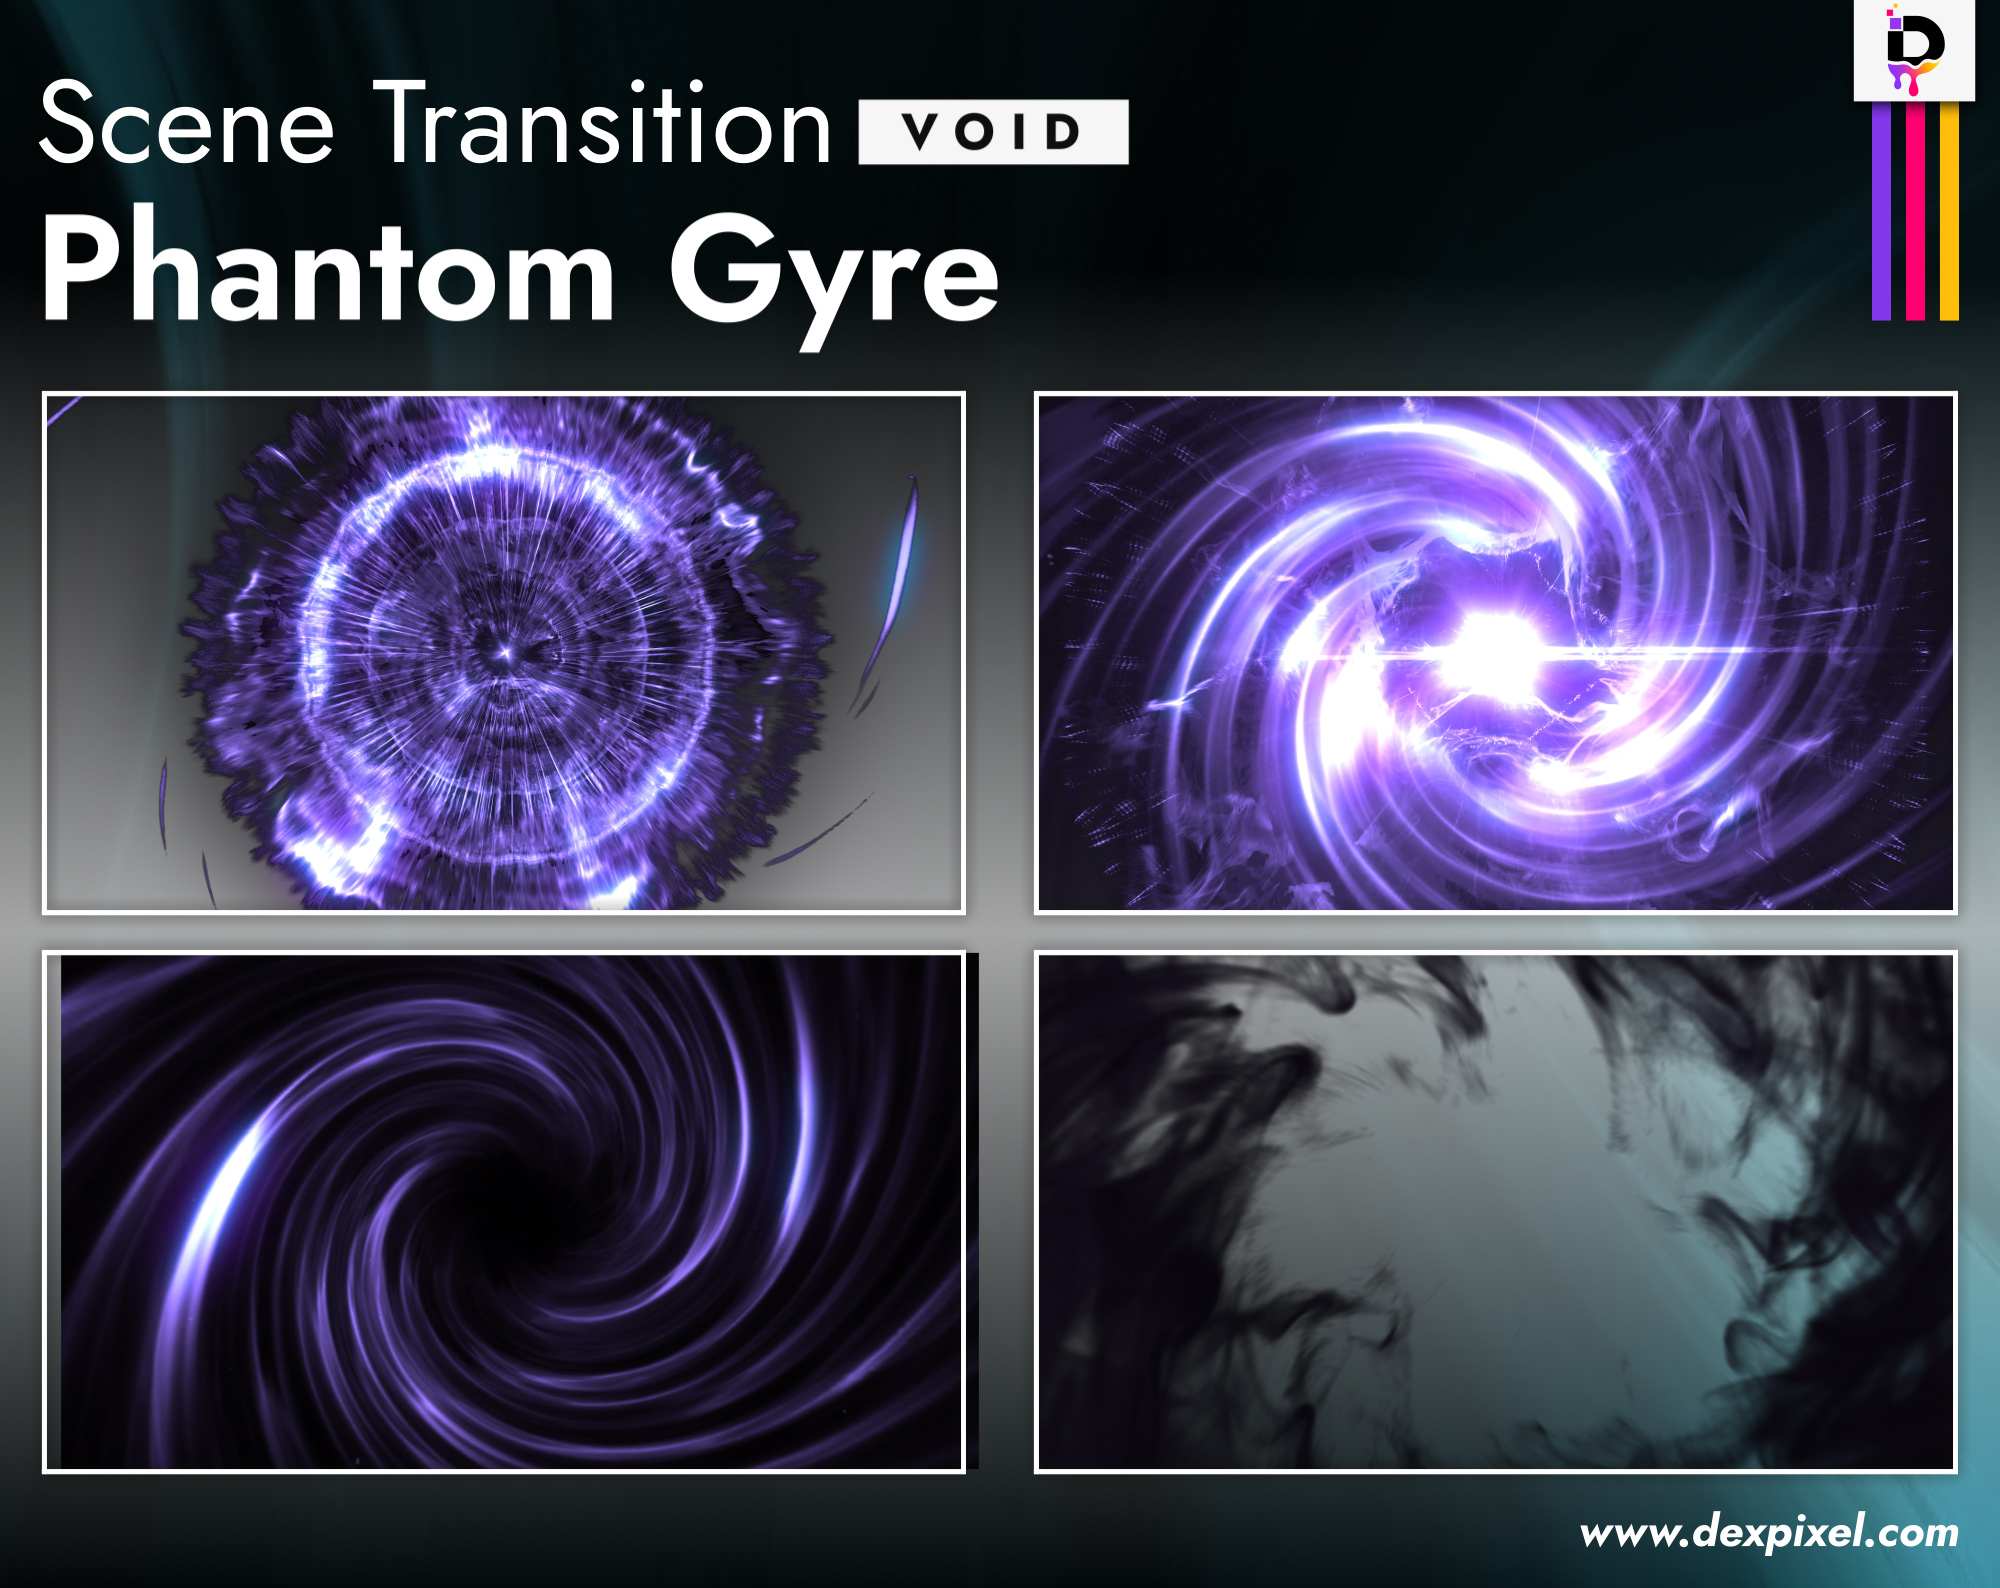 Scene Transition Phantom Gyre Void